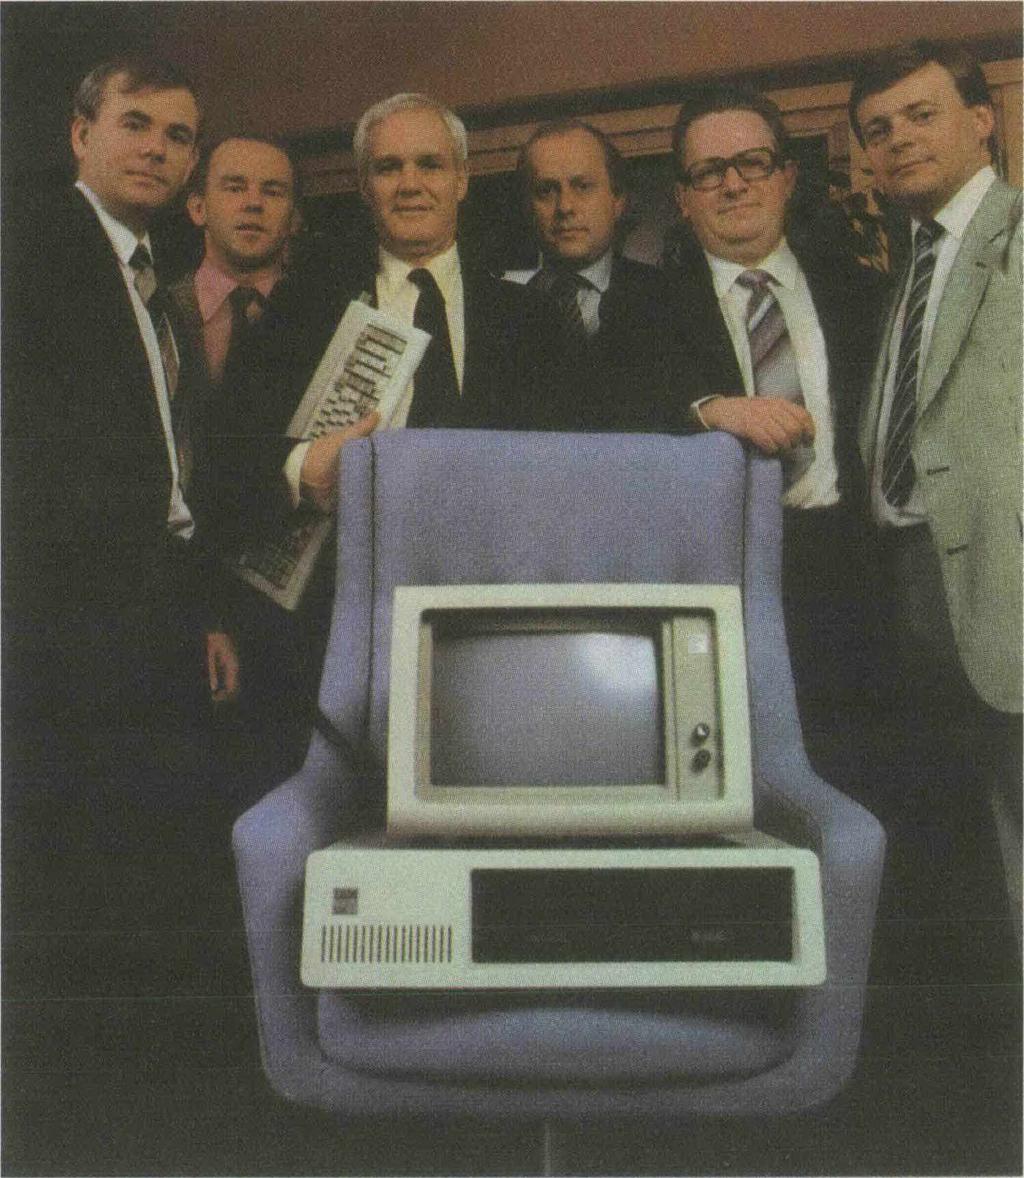 TORBJÖRN JOHANSSON OCH GUNNAR VON SYDOW Vid introduktionen i Sverige 1983 flankerades IBM PC av servicechefen Eje Engdahl, försäljningschefen Lars Bergquist, marknadsdirektören Sture Linn,